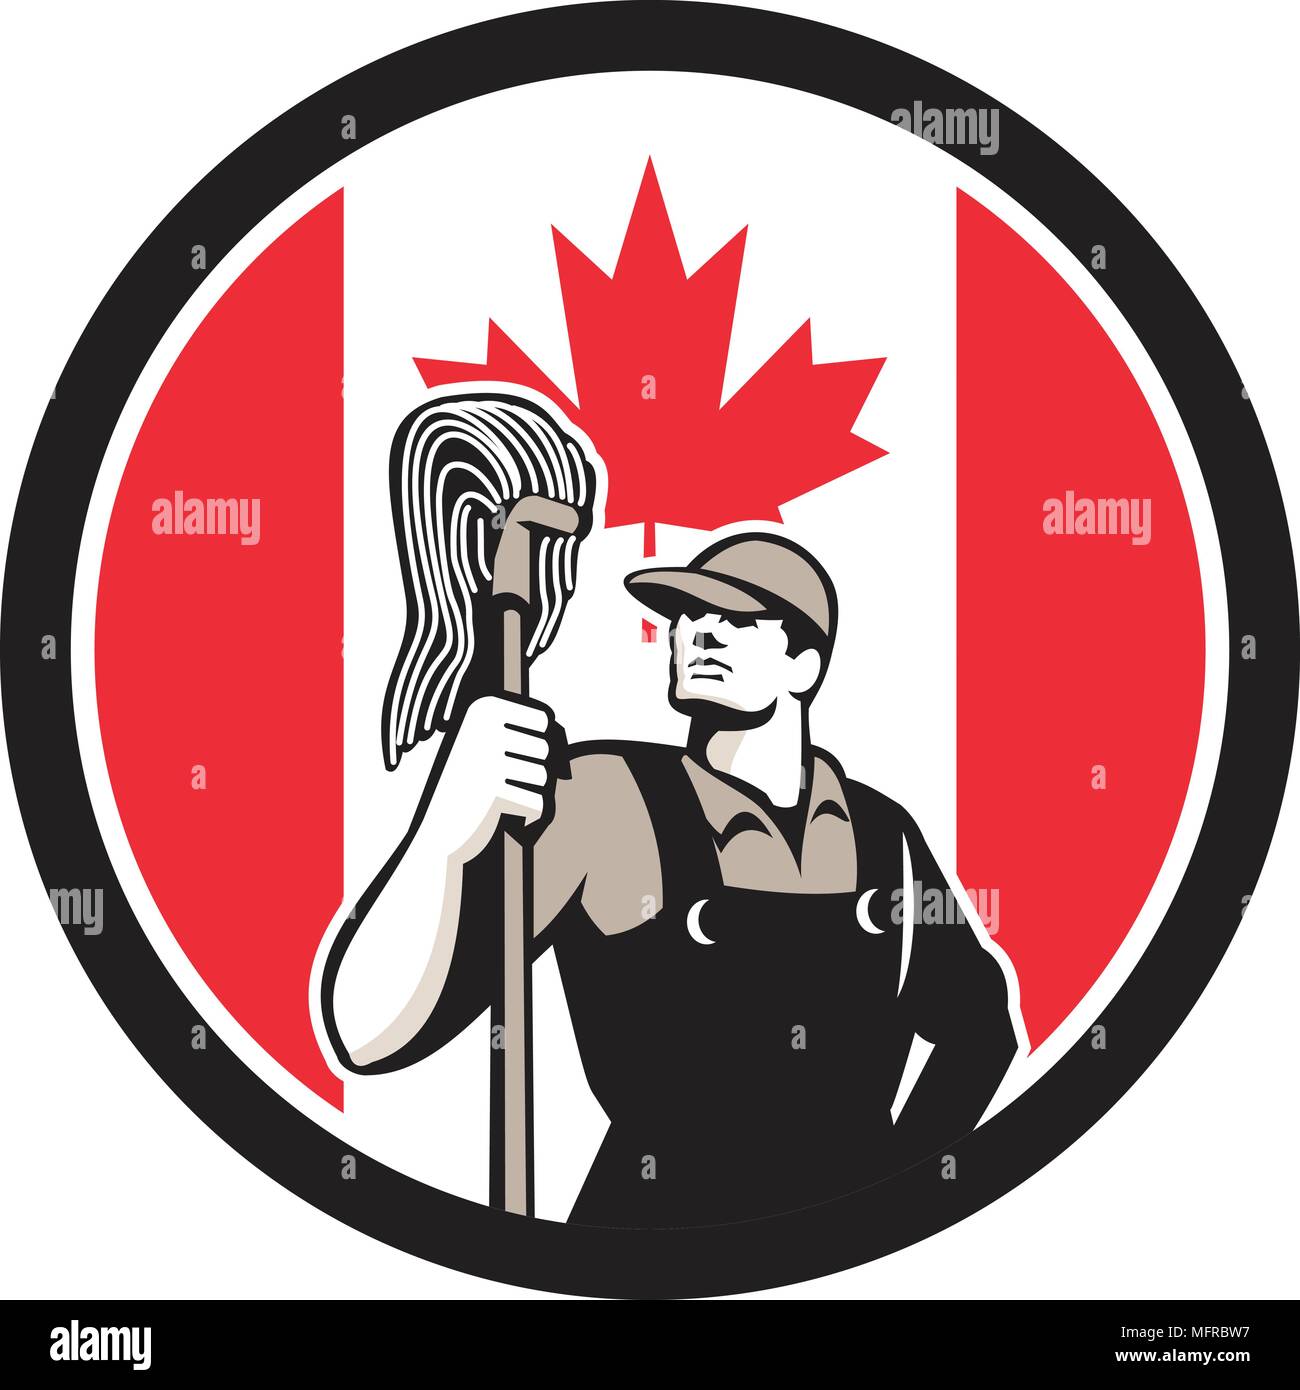 Style rétro icône illustration d'un joueur professionnel nettoyant industriel ou des services de nettoyage worker holding mop avec le drapeau à feuille d'érable situé dans Illustration de Vecteur